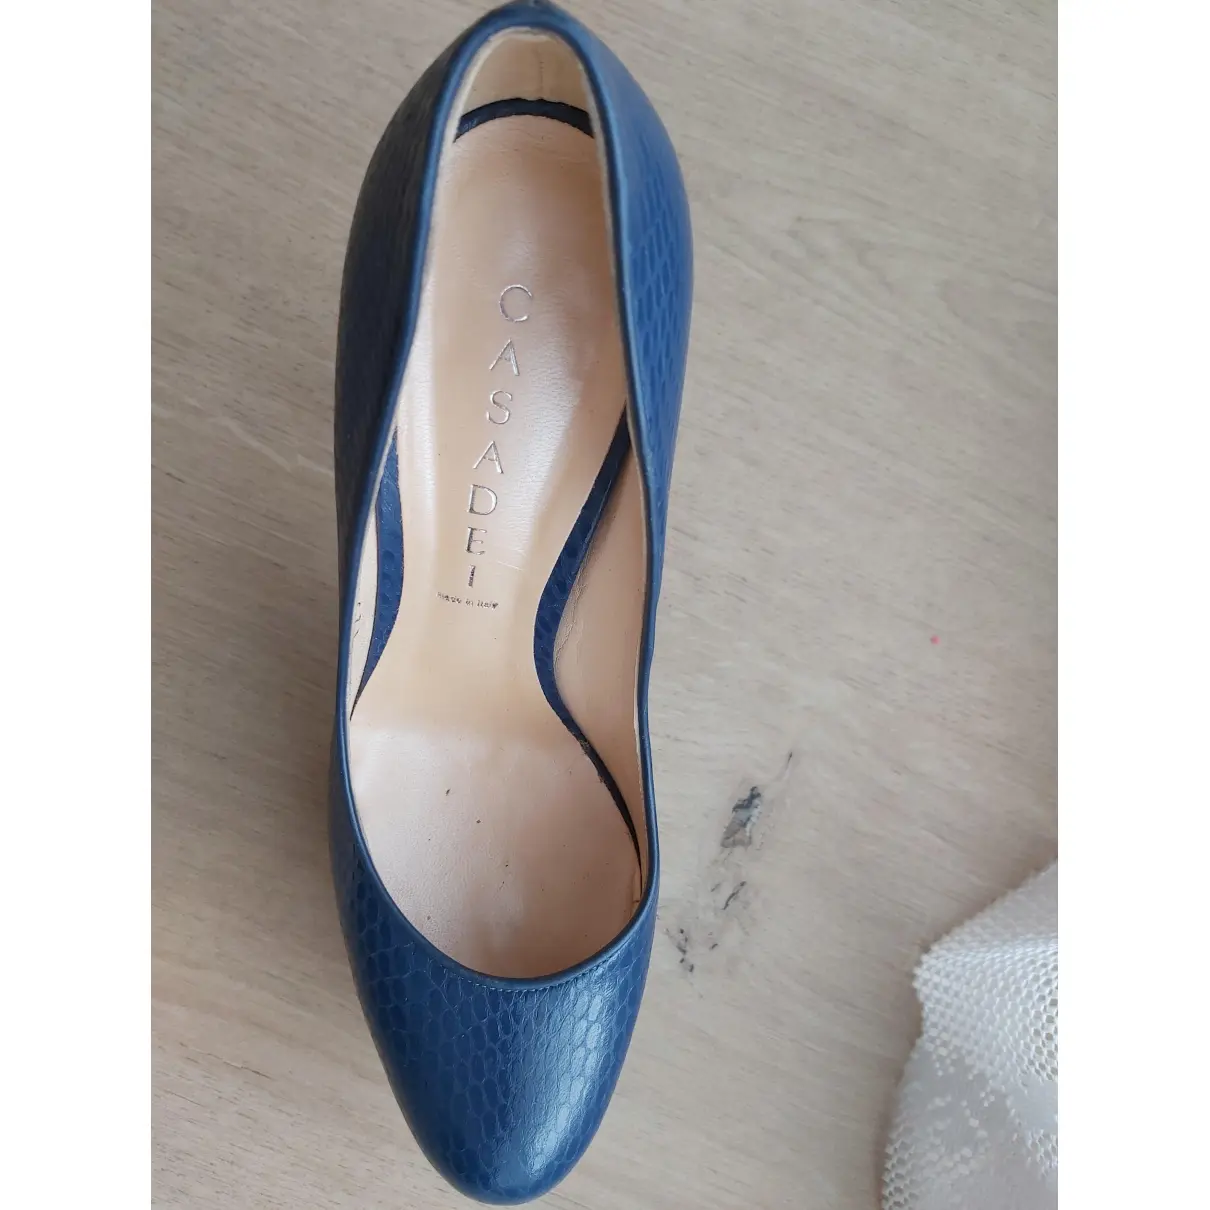 Buy Casadei Leather heels online